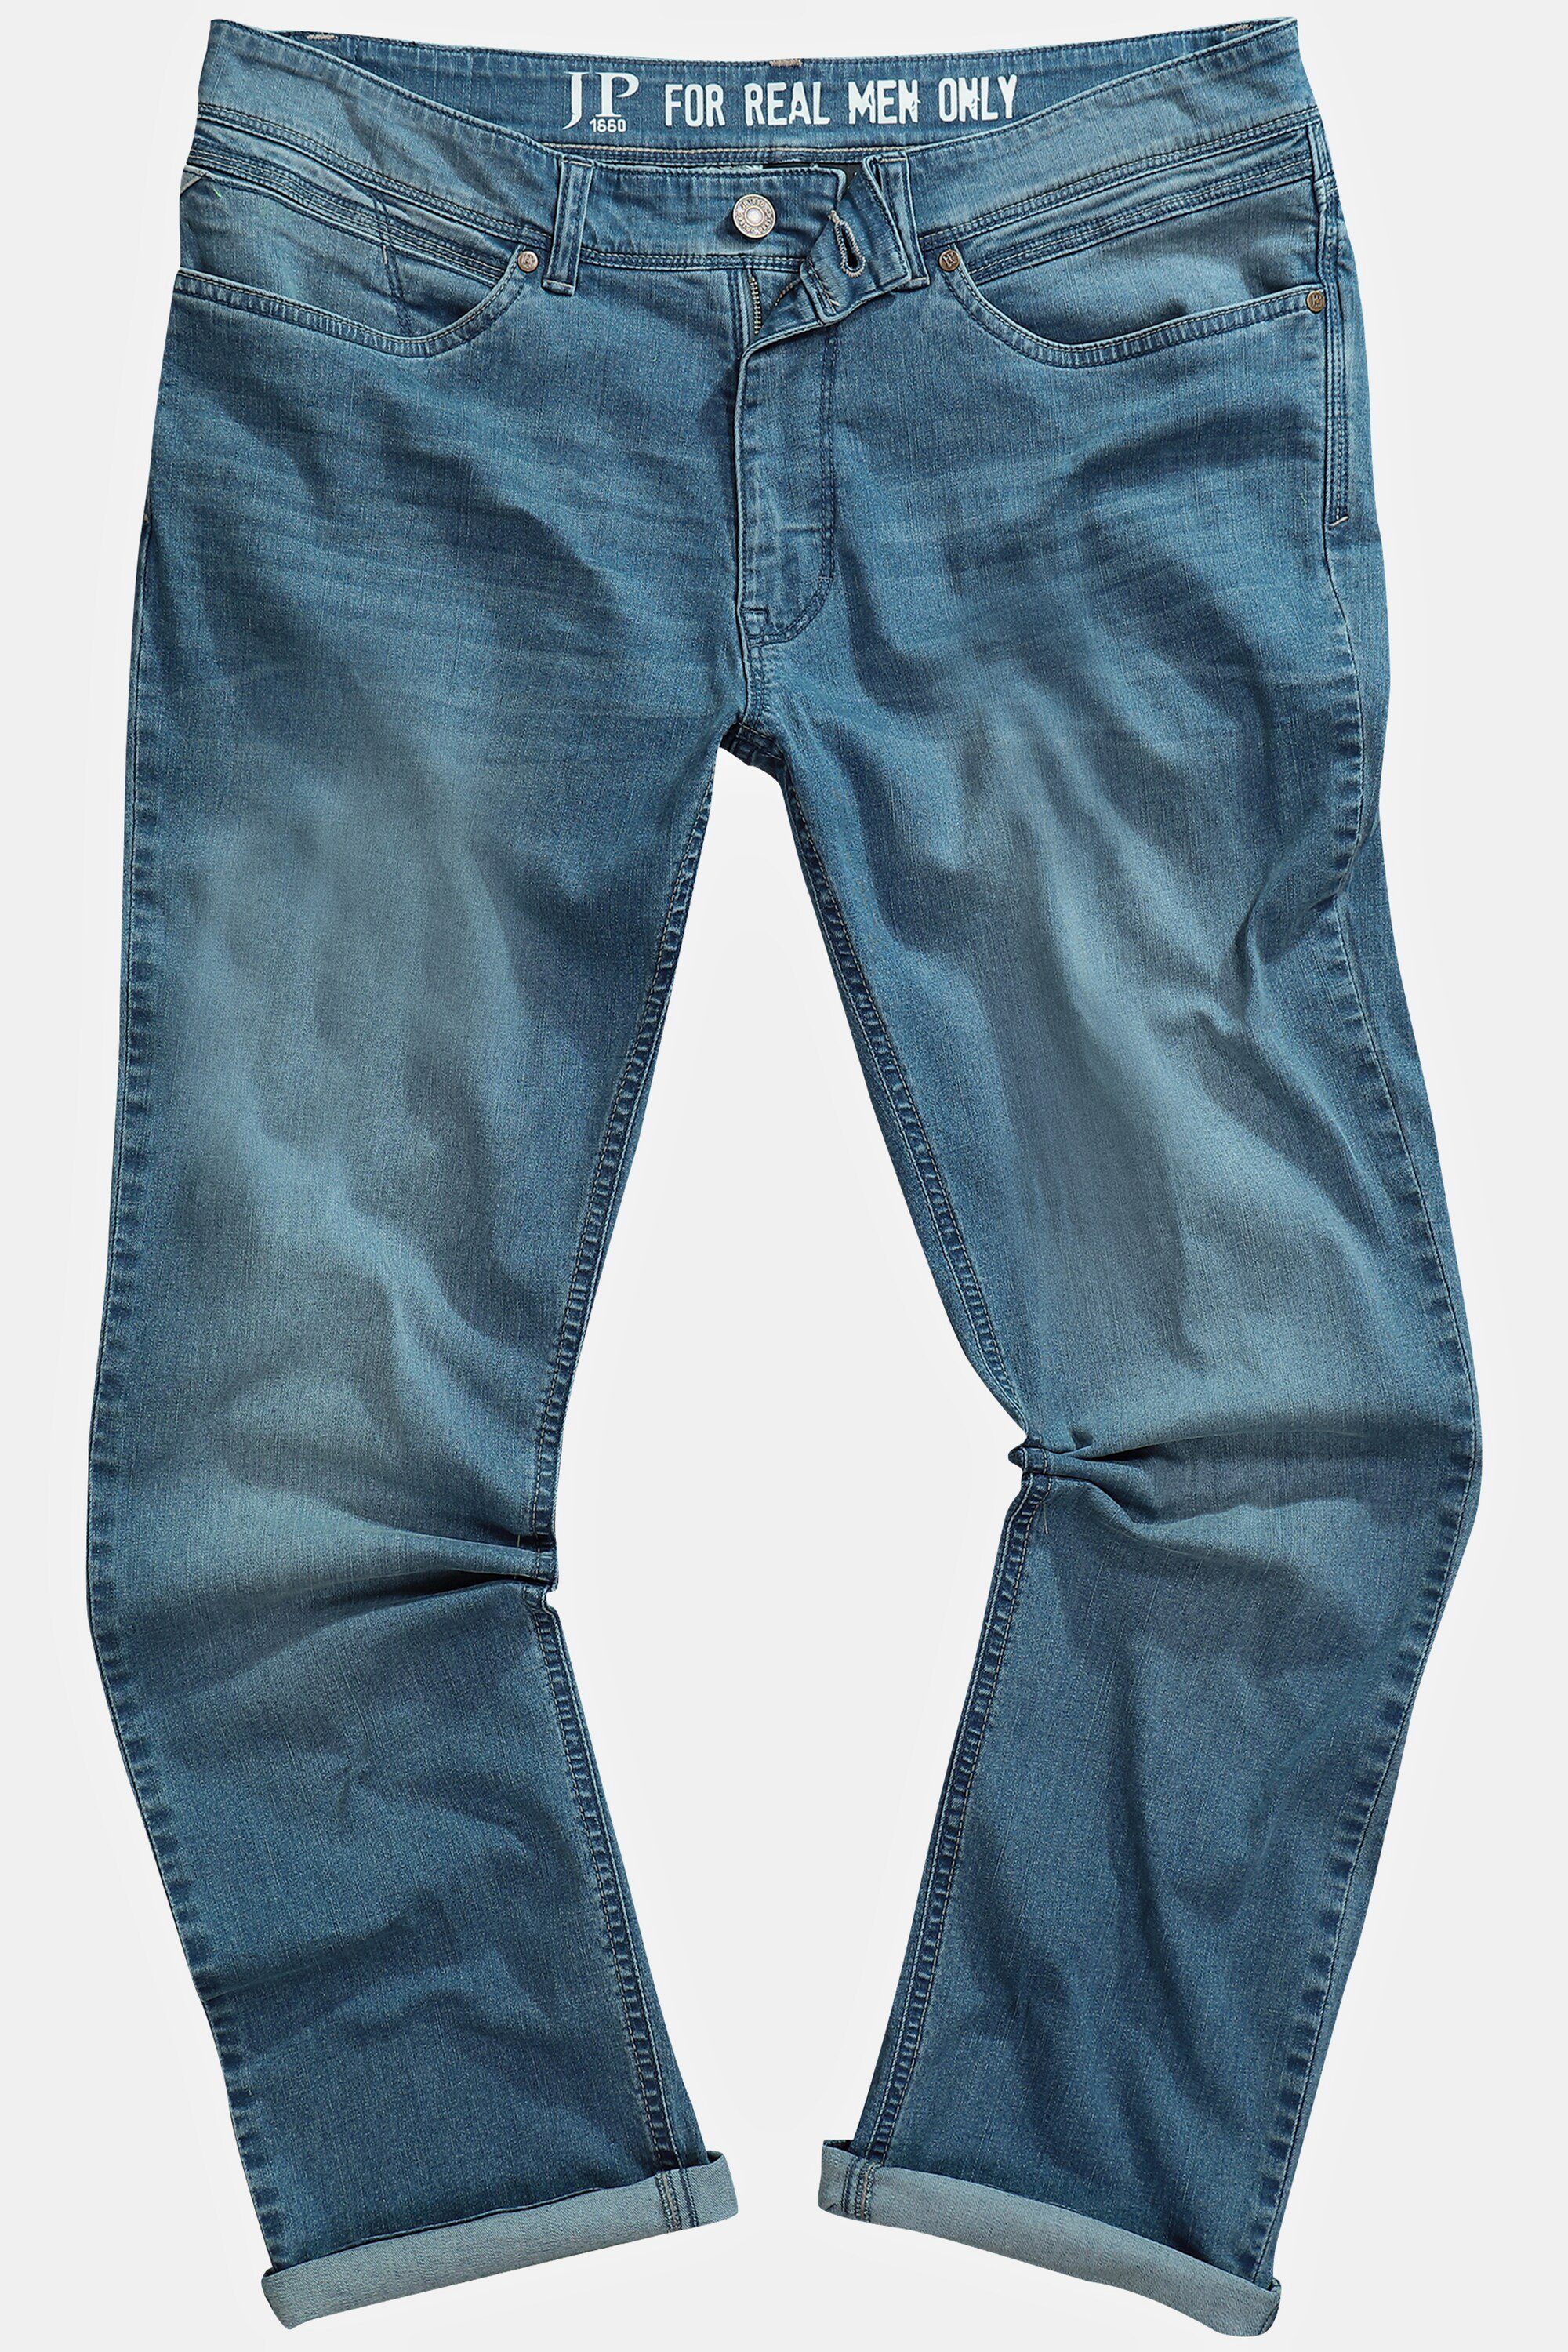 lightweight JP1880 denim Regular blue Fit Bauchfit Jeans Cargohose 5-Pocket